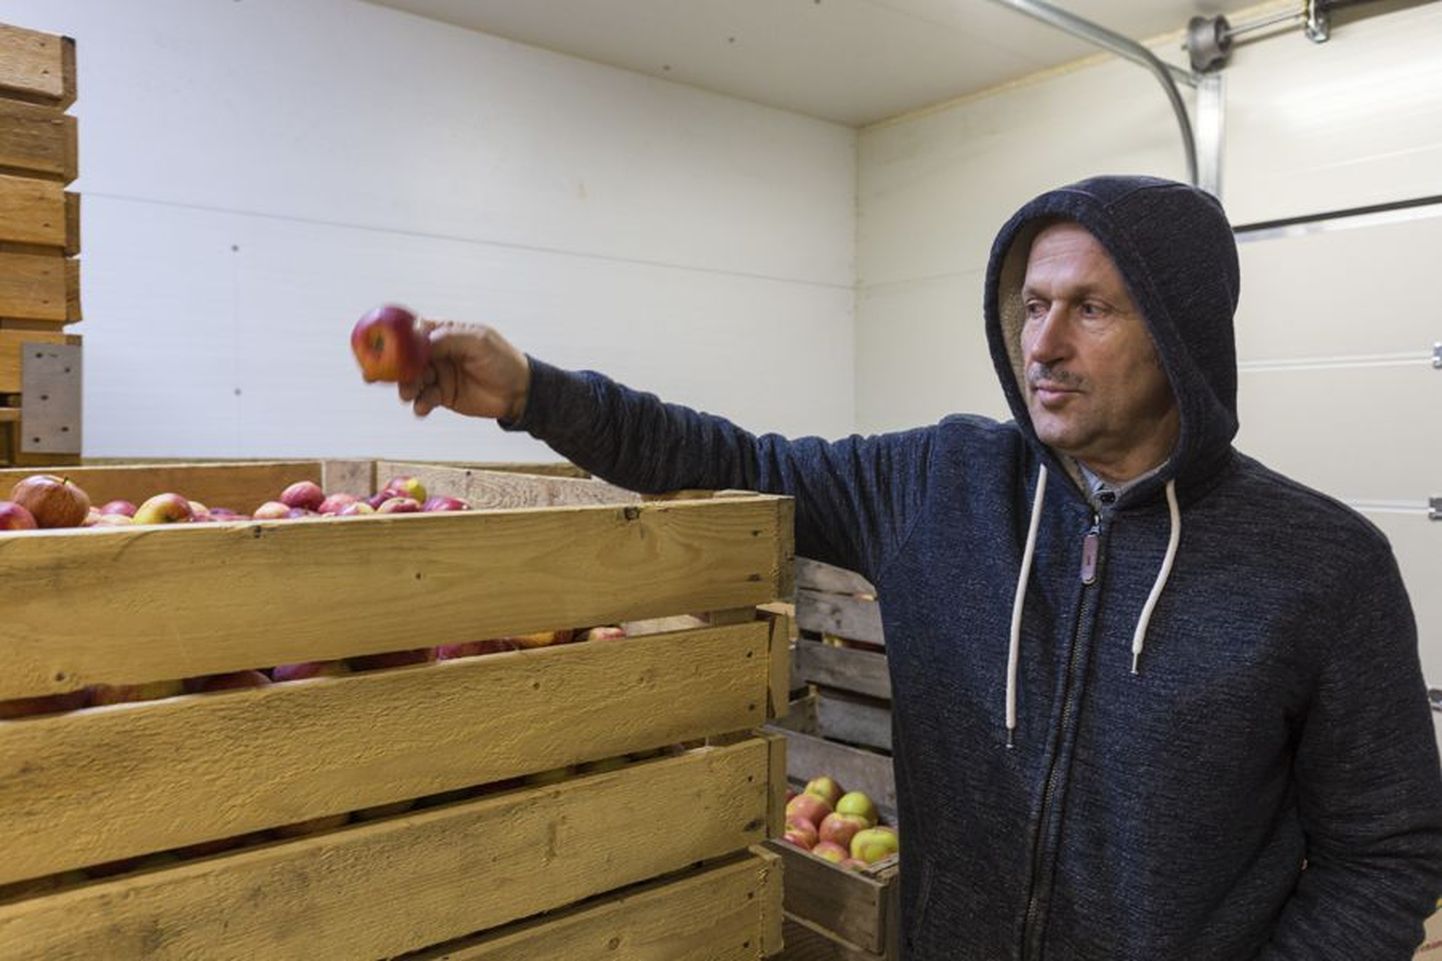 Müügiks õunu, pirne ja ploome kasvatav Andres Mets ei tea kedagi, kes teaks kedagi, kes ekspordiks Eestist puuvilju Venemaale.